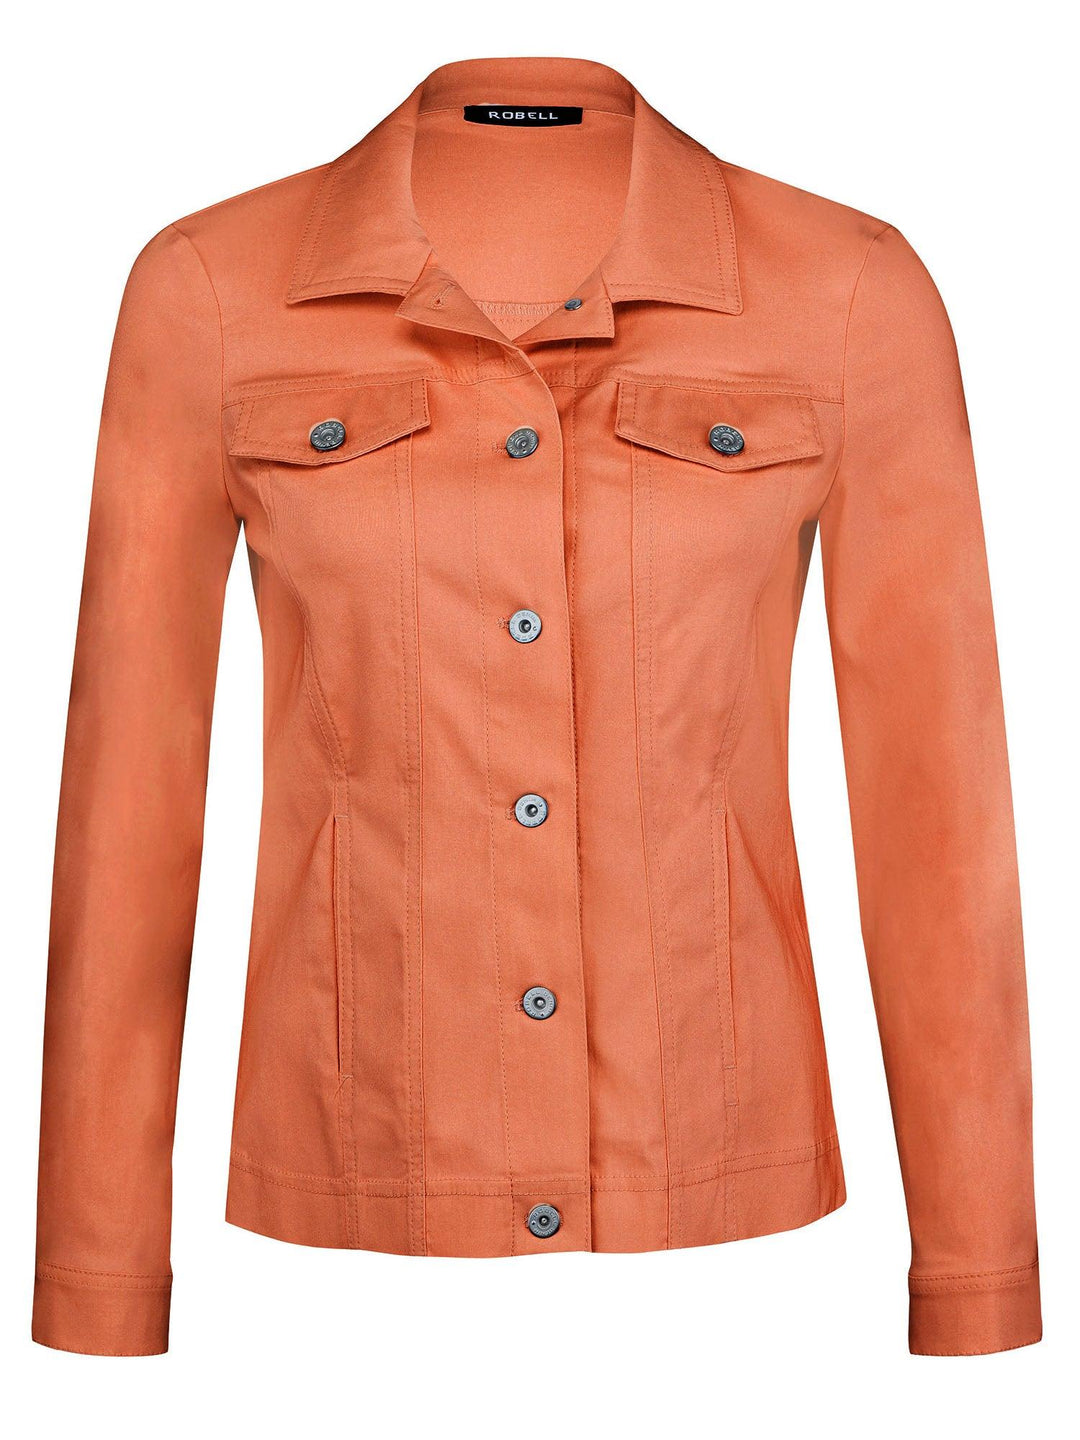 Robell Happy Jacket - Orange - 57609-5499-320 - Jacket Jacket, Orange ginasmartboutique